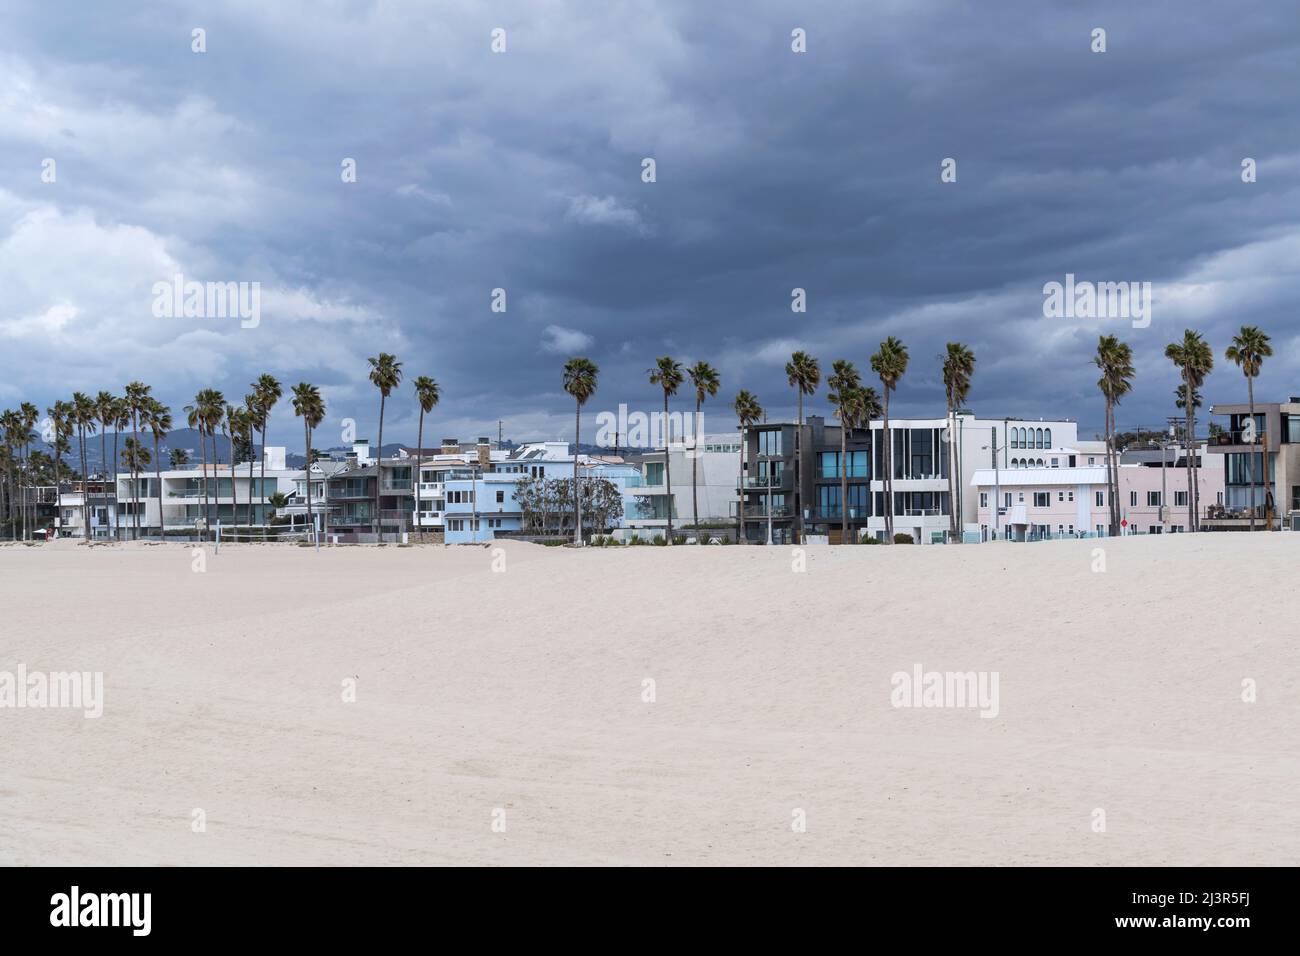 Am beliebten Venice Beach in Los Angeles, Kalifornien, sammeln sich Gewitterwolken über Häusern und Palmen. Stockfoto